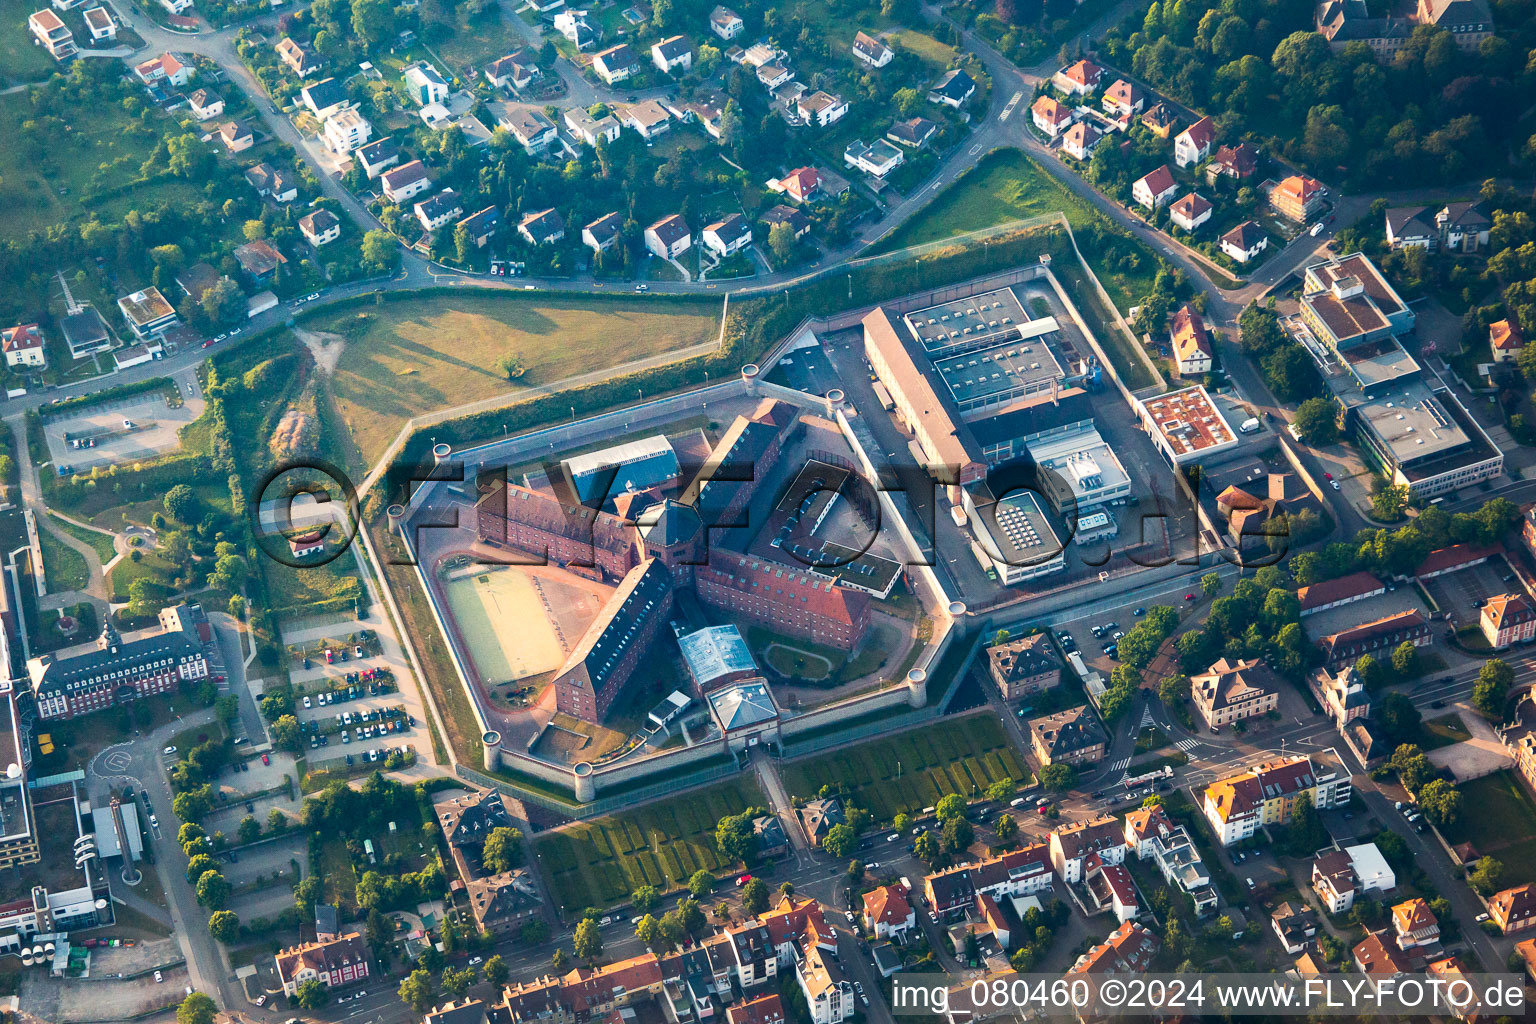 Vue aérienne de Établissement pénitentiaire Bruchsal dans le quartier d'Untergrombach à Bruchsal dans le département Bade-Wurtemberg, Allemagne